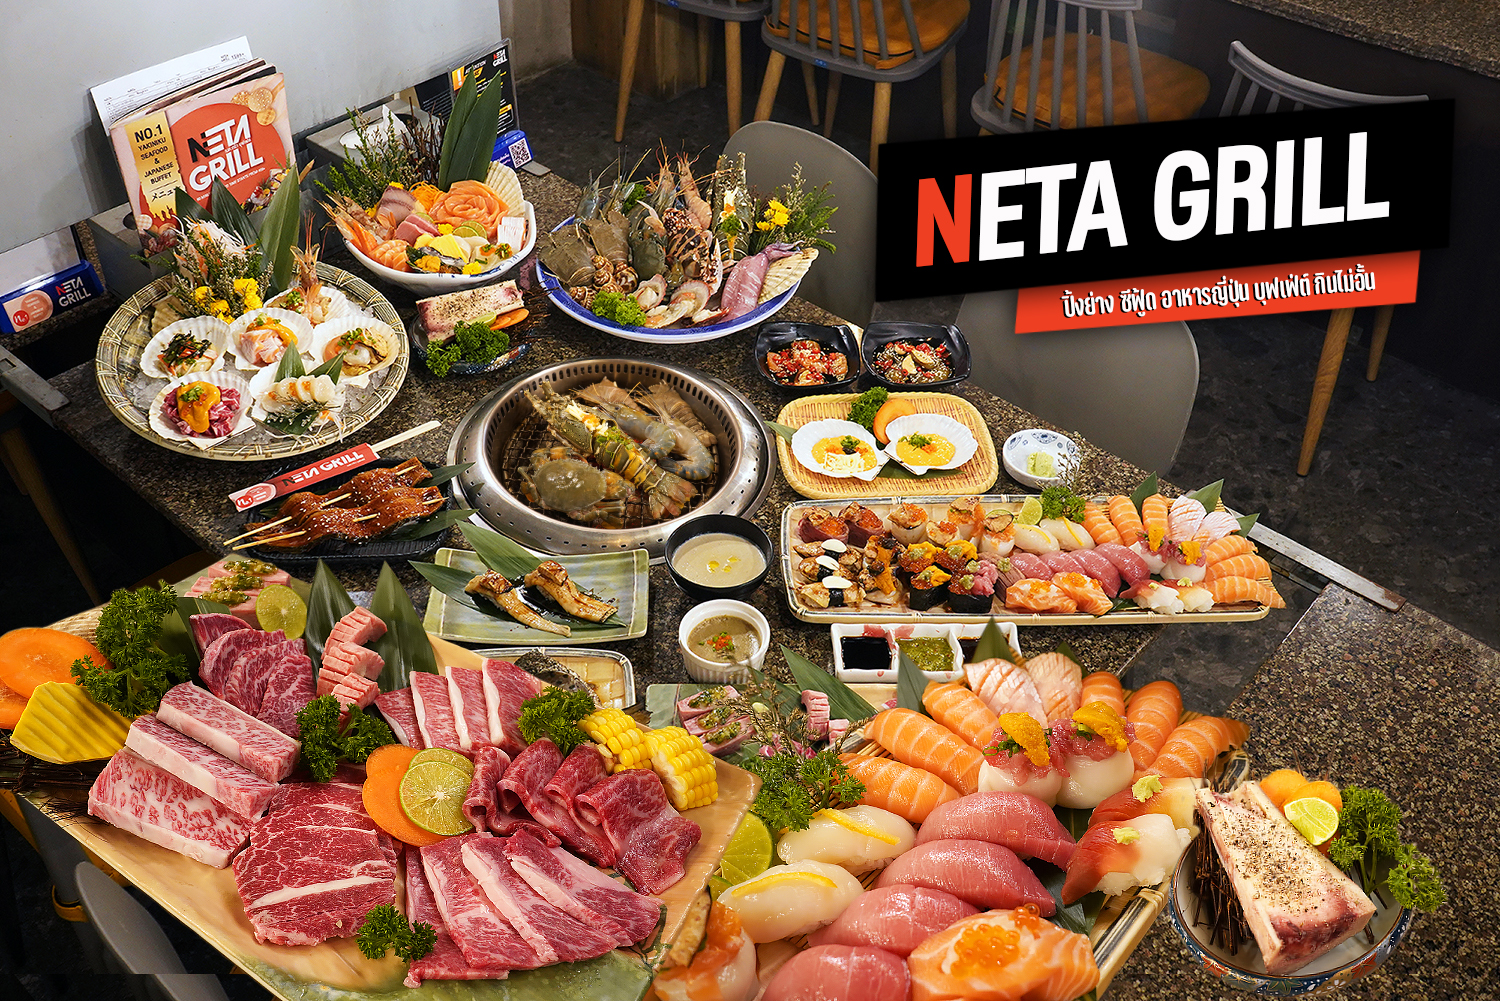 กินอย่างหนัก จัดอย่างเต็ม กินไม่อั้น ปิ้งย่าง ซีฟู้ด อาหารญี่ปุ่น บุฟเฟ่ต์ พรีเมี่ยม น่ากินโคตร NETA GRILL เซ็นทรัล พลาซ่า เวสต์เกต